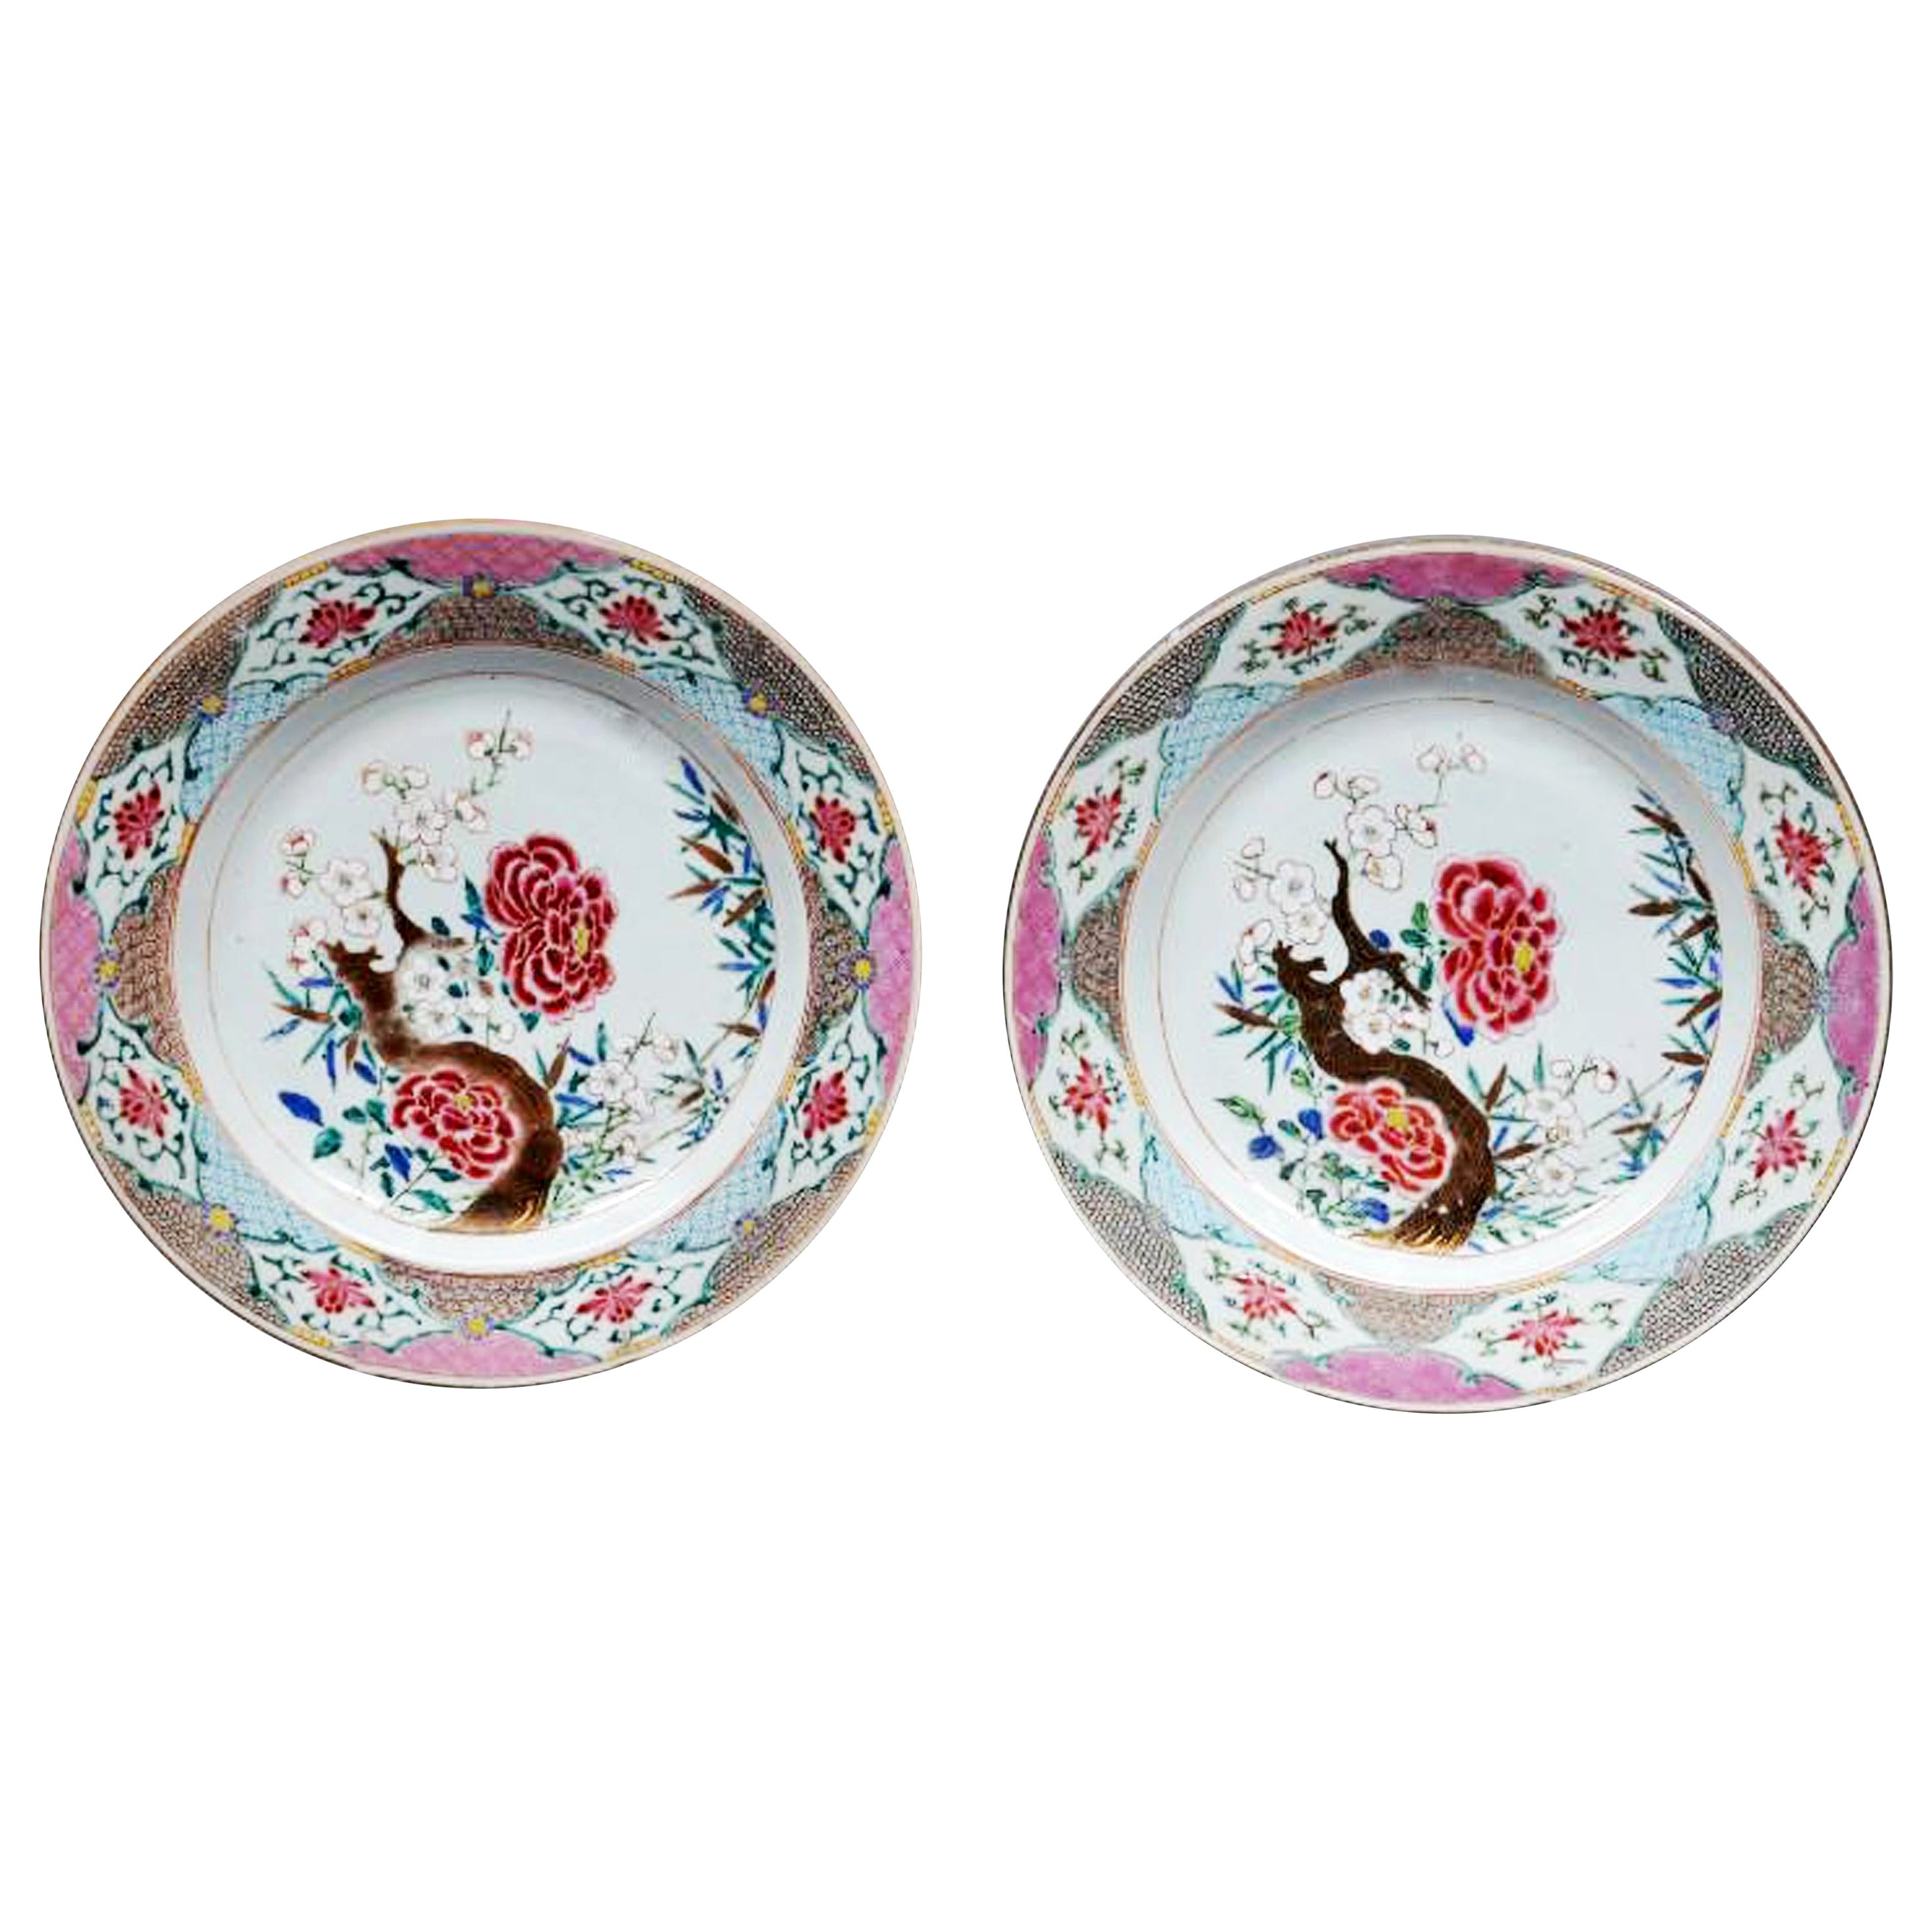 Grands plats en porcelaine d'exportation chinoise de la famille rose, vers 1765-1775